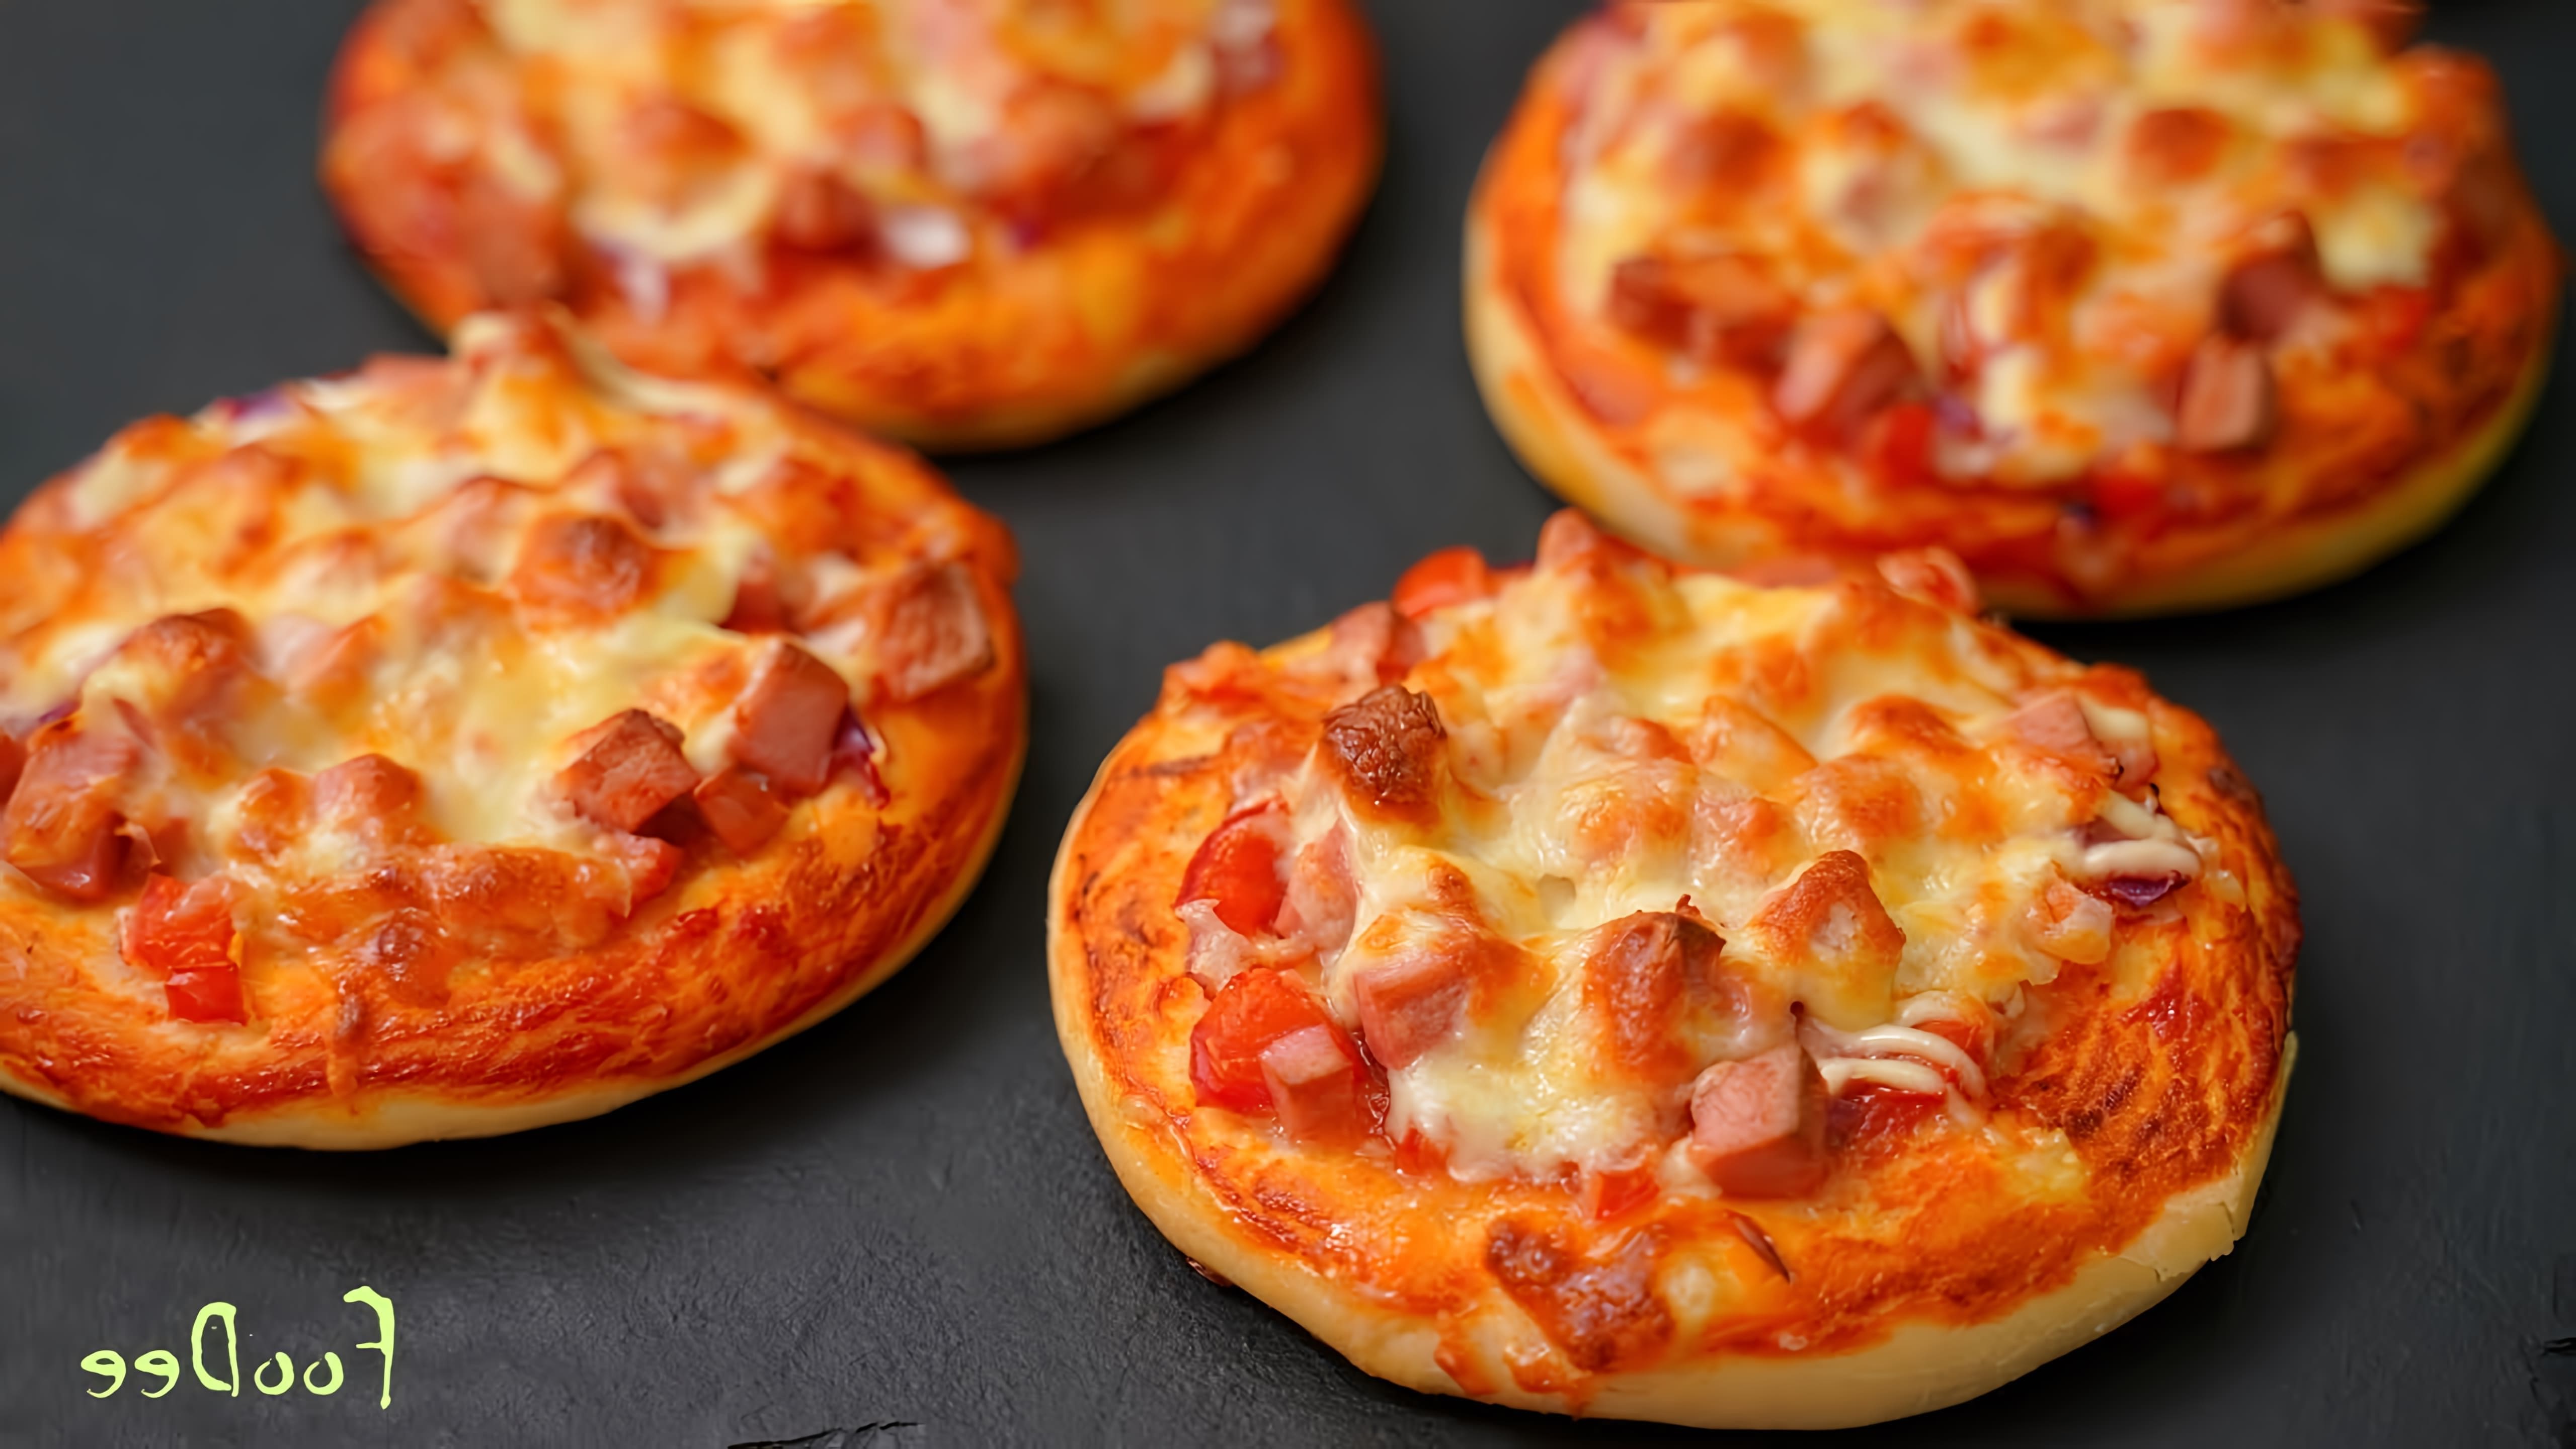 В этом видео демонстрируется процесс приготовления домашних мини-пицц из детства